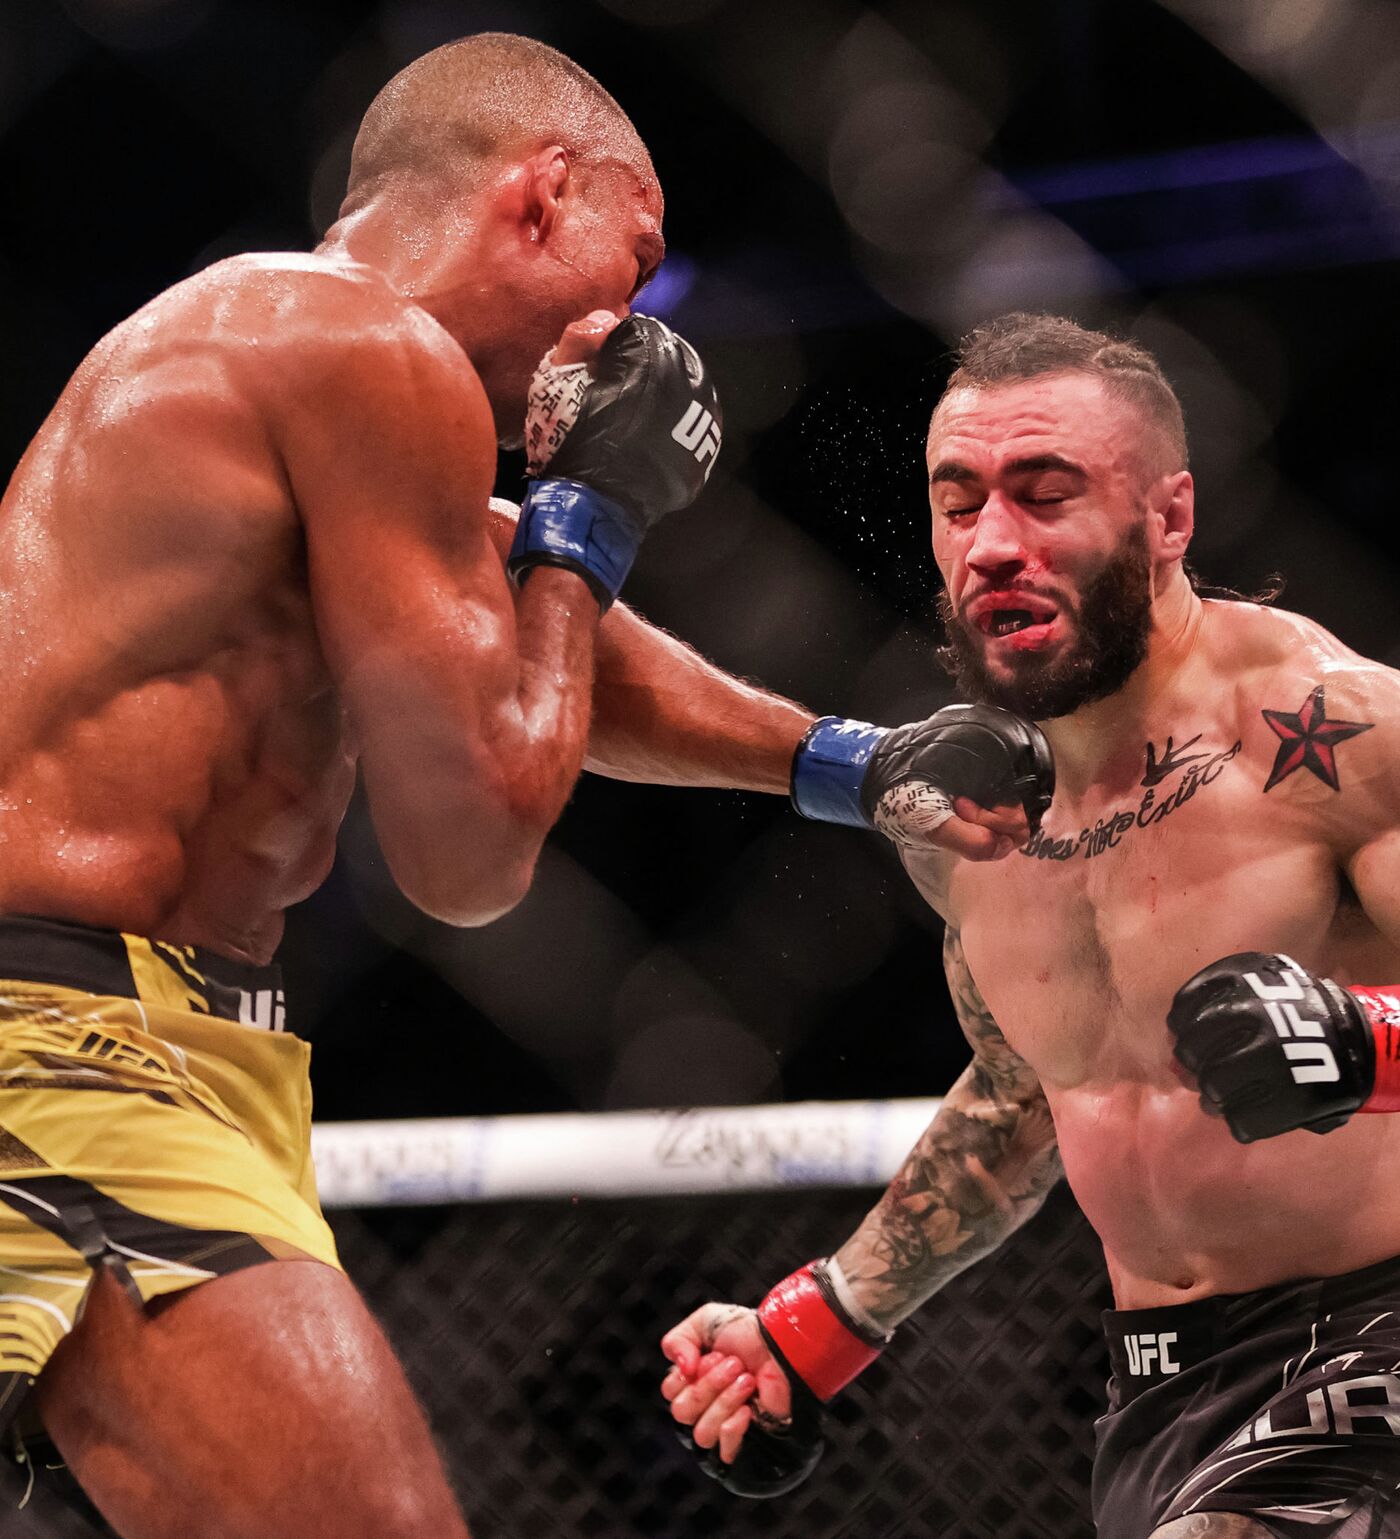 Боец упал спустя 5 секунд после удара — видео необычного нокаута на UFC 262 - 17.05.2021, Sputnik Кыргызстан